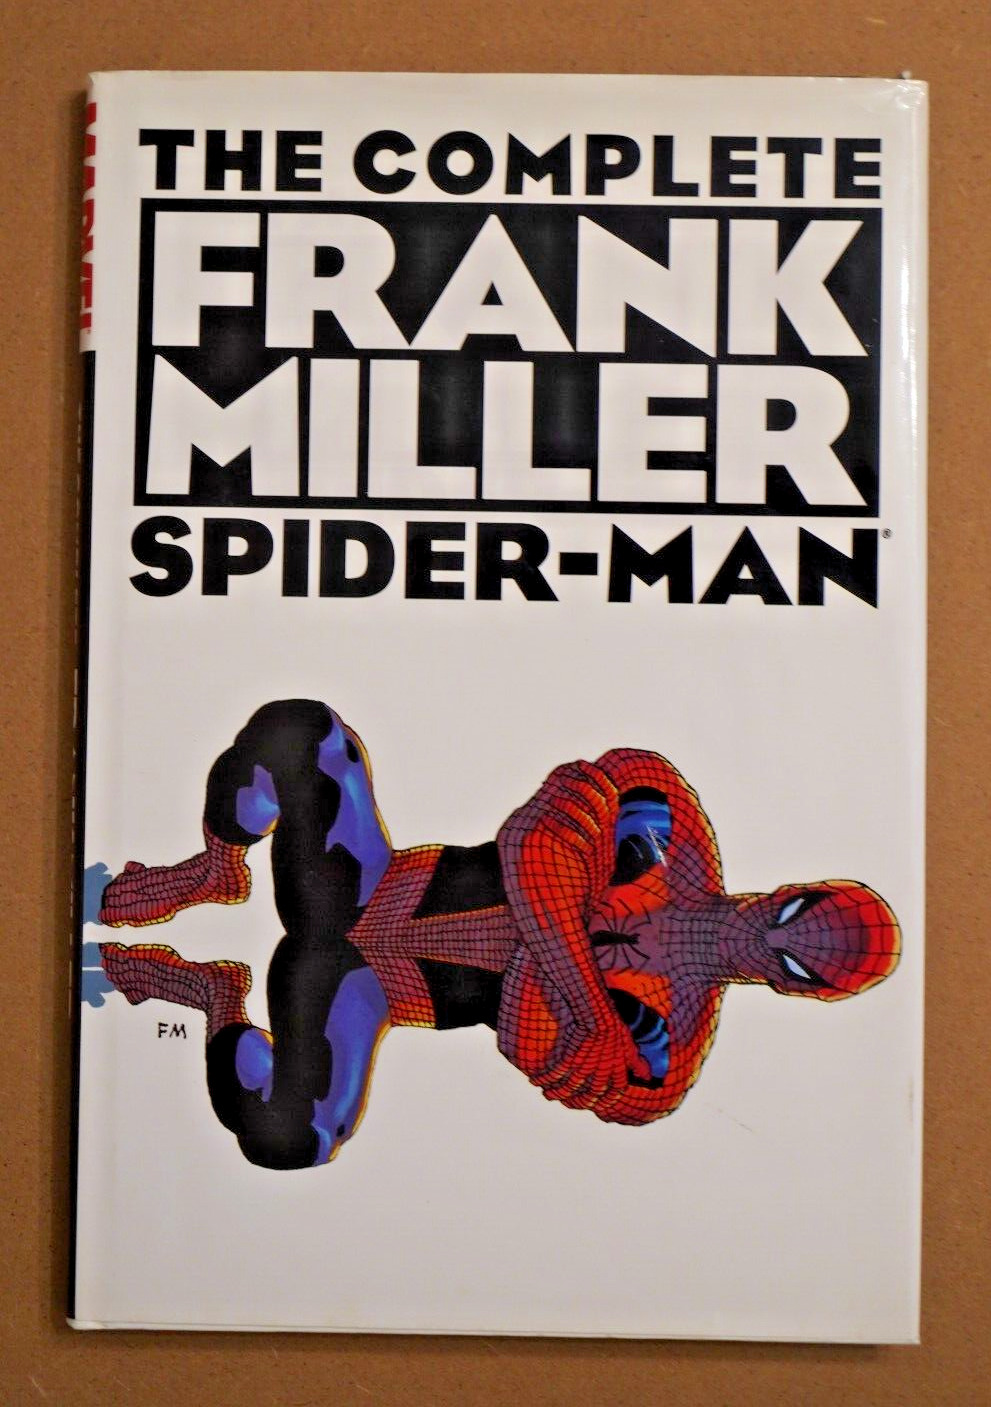 THE COMPLETE FRANK MILLER SPIDER-MAN - Hardcover - Marvel